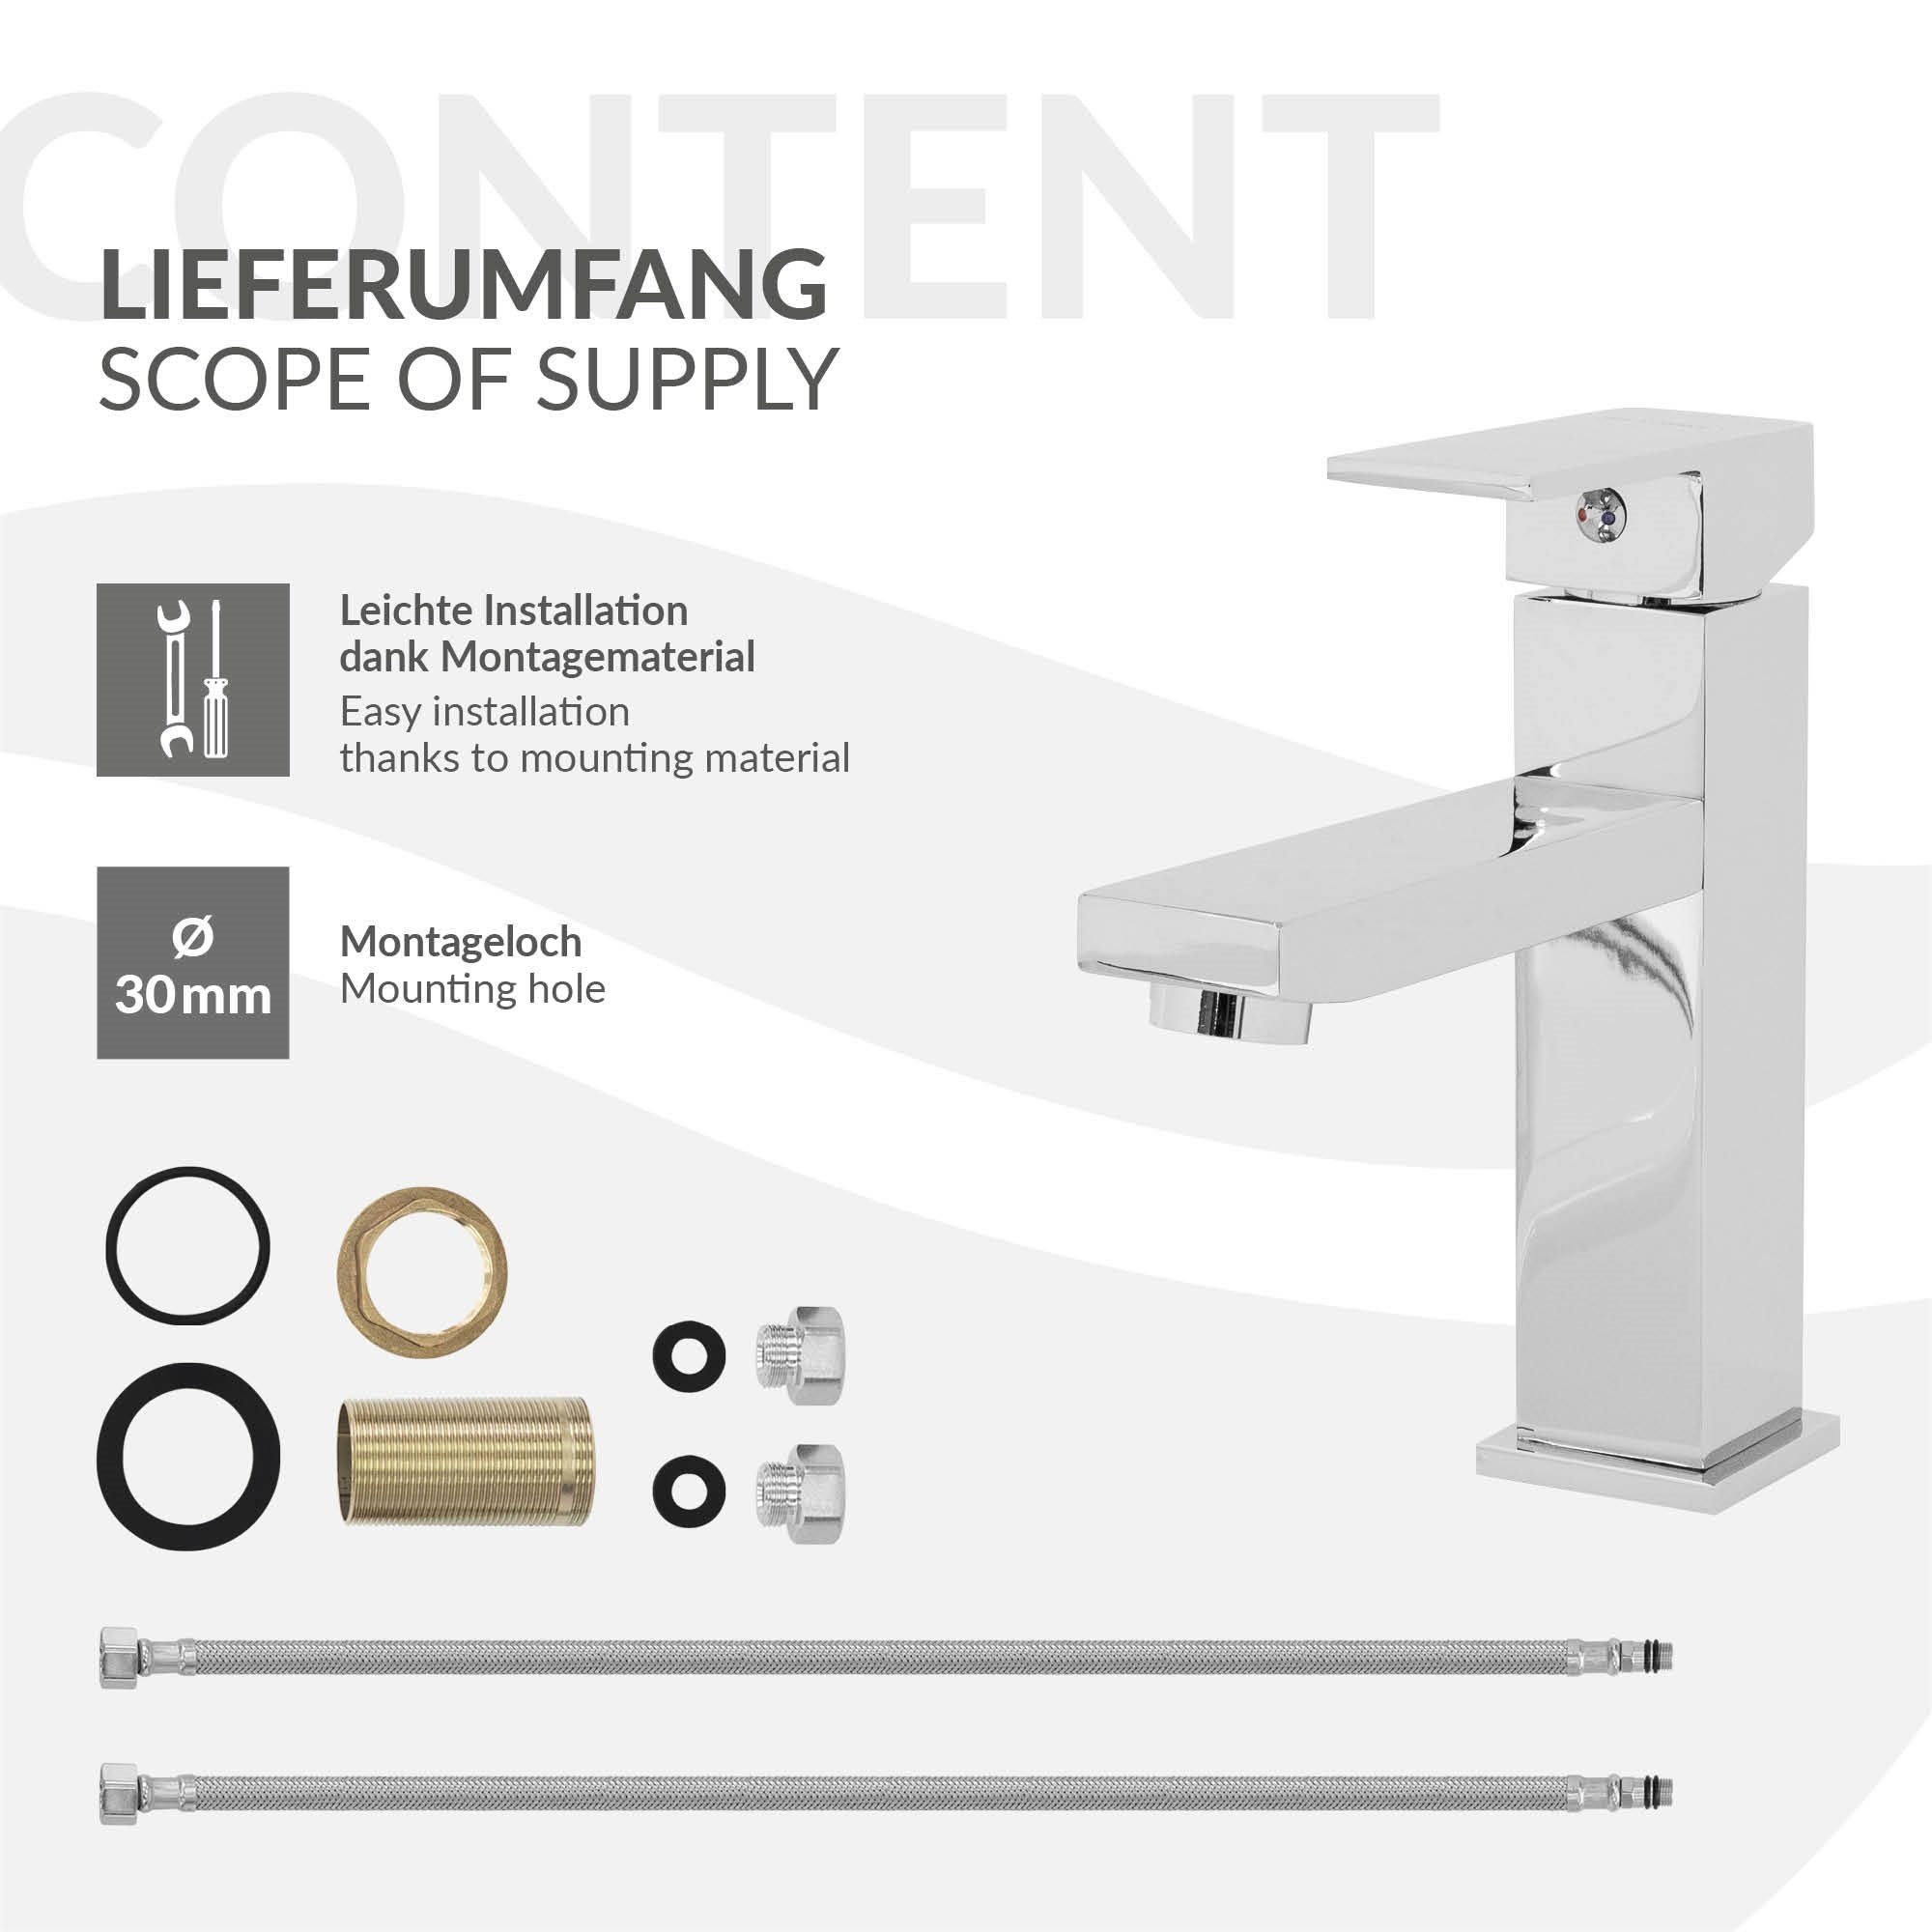 LuxeBath Badezimmer fürs Chrom aus Waschtischarmatur Waschtischarmatur Messing 160x45x170 mm